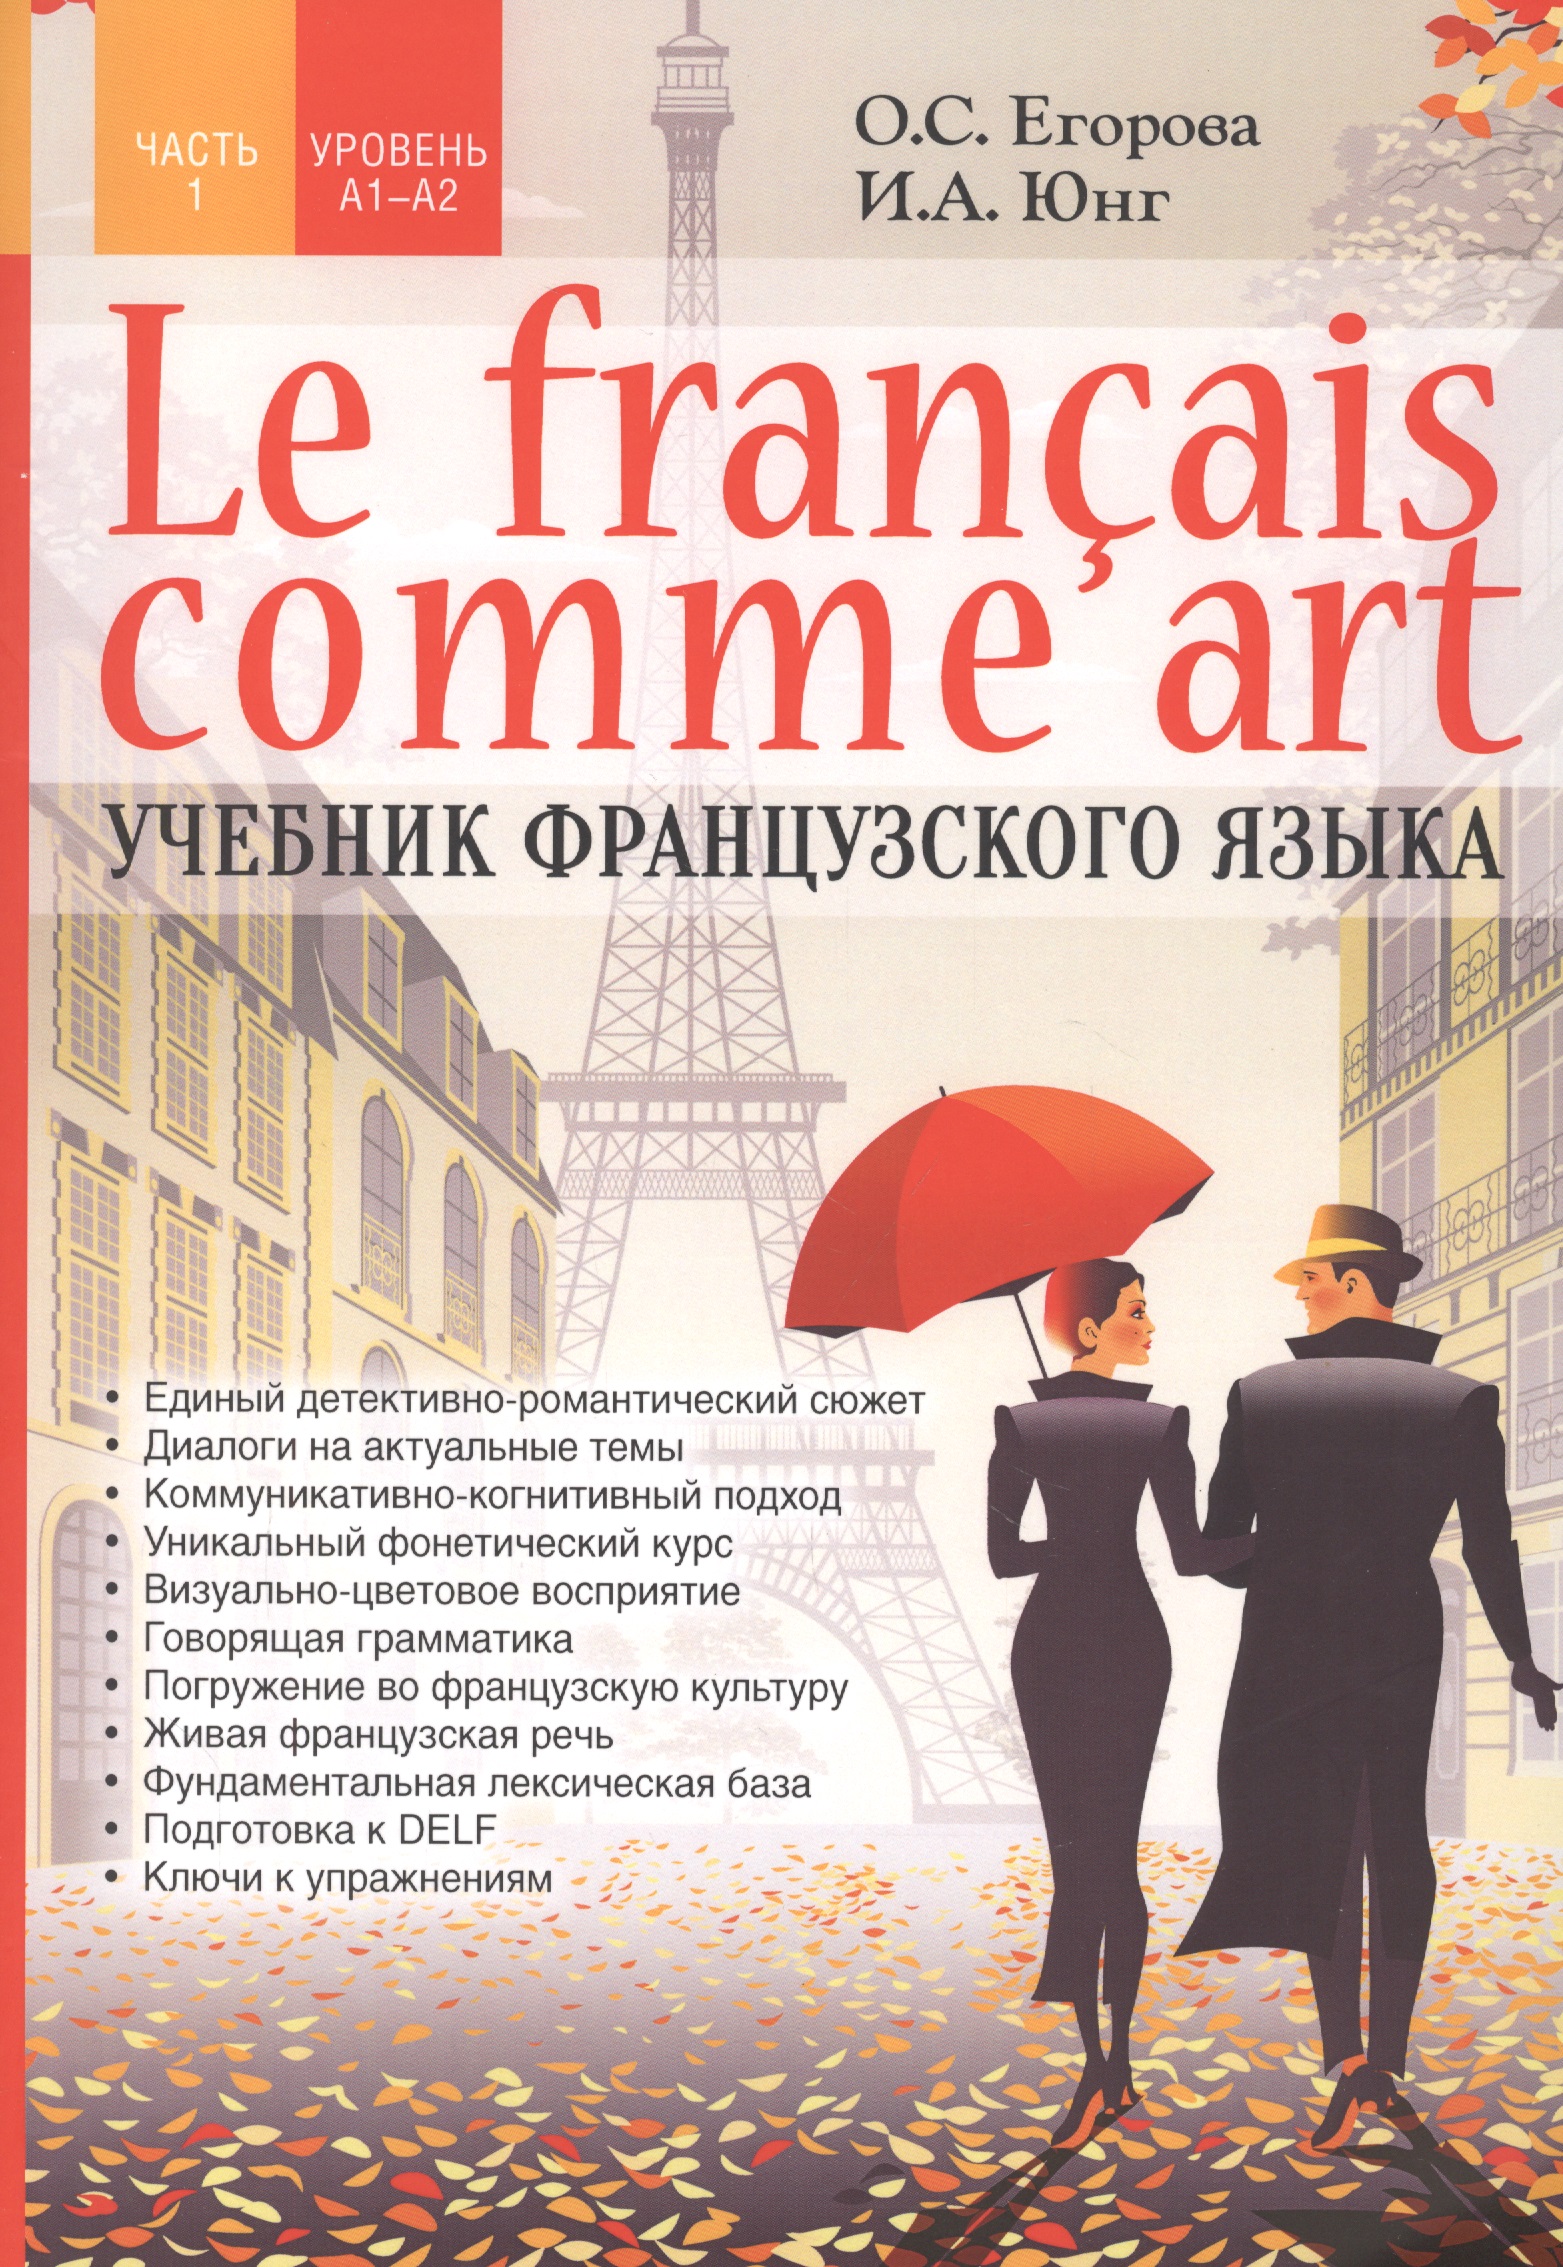 Егорова О. С. Le francais comme art. Учебник французского языка. Часть 1. Уровень А1-А2